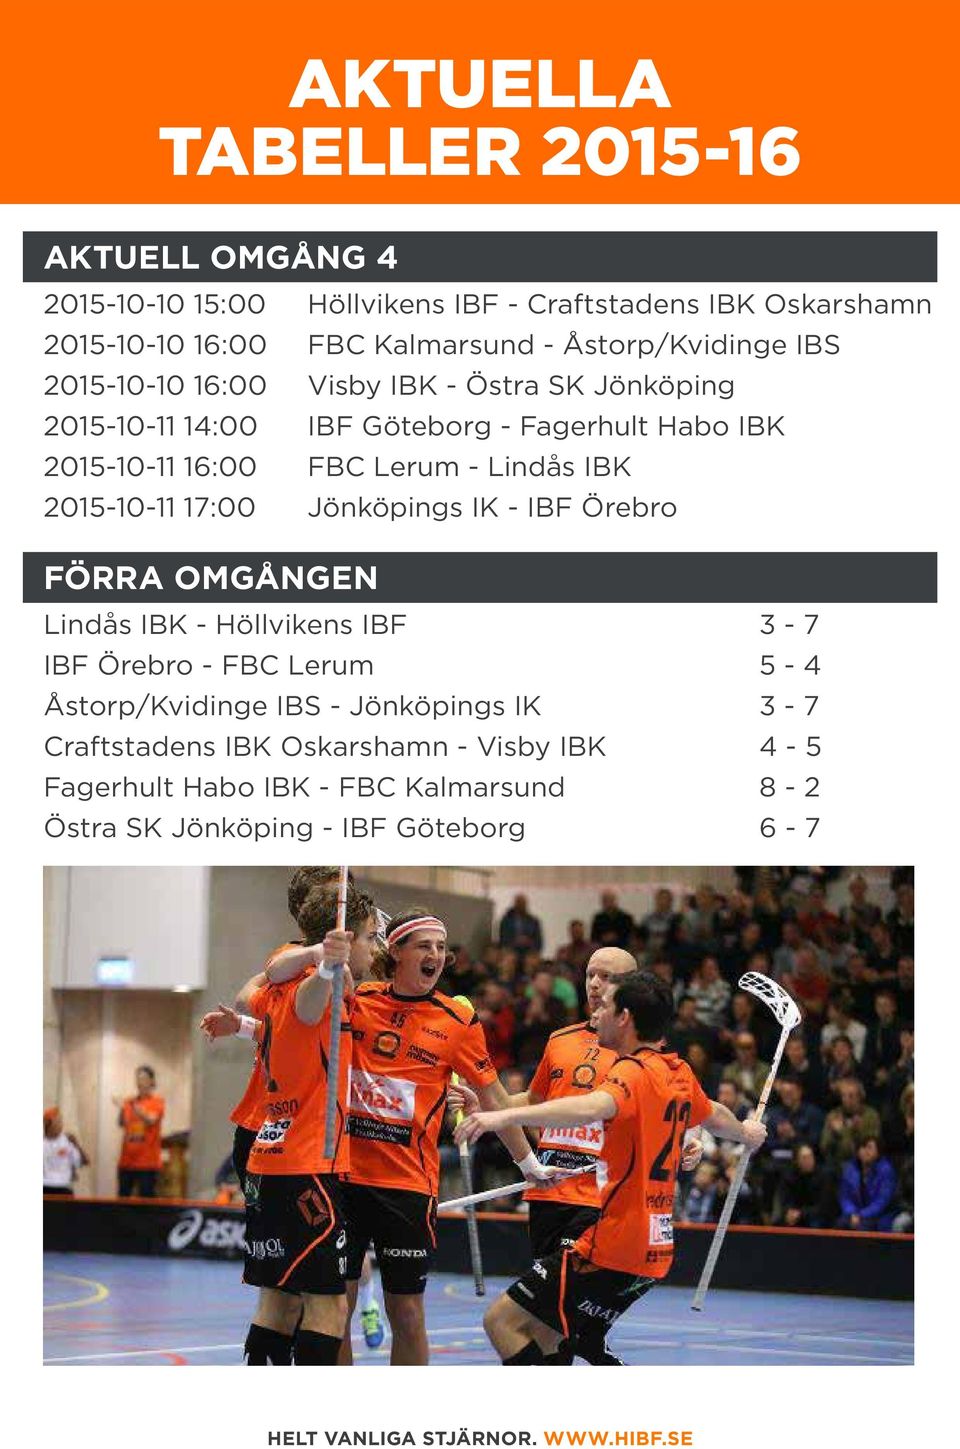 Lerum - Lindås IBK 2015-10-11 17:00 Jönköpings IK - IBF Örebro FÖRRA OMGÅNGEN Lindås IBK - Höllvikens IBF 3-7 IBF Örebro - FBC Lerum 5-4